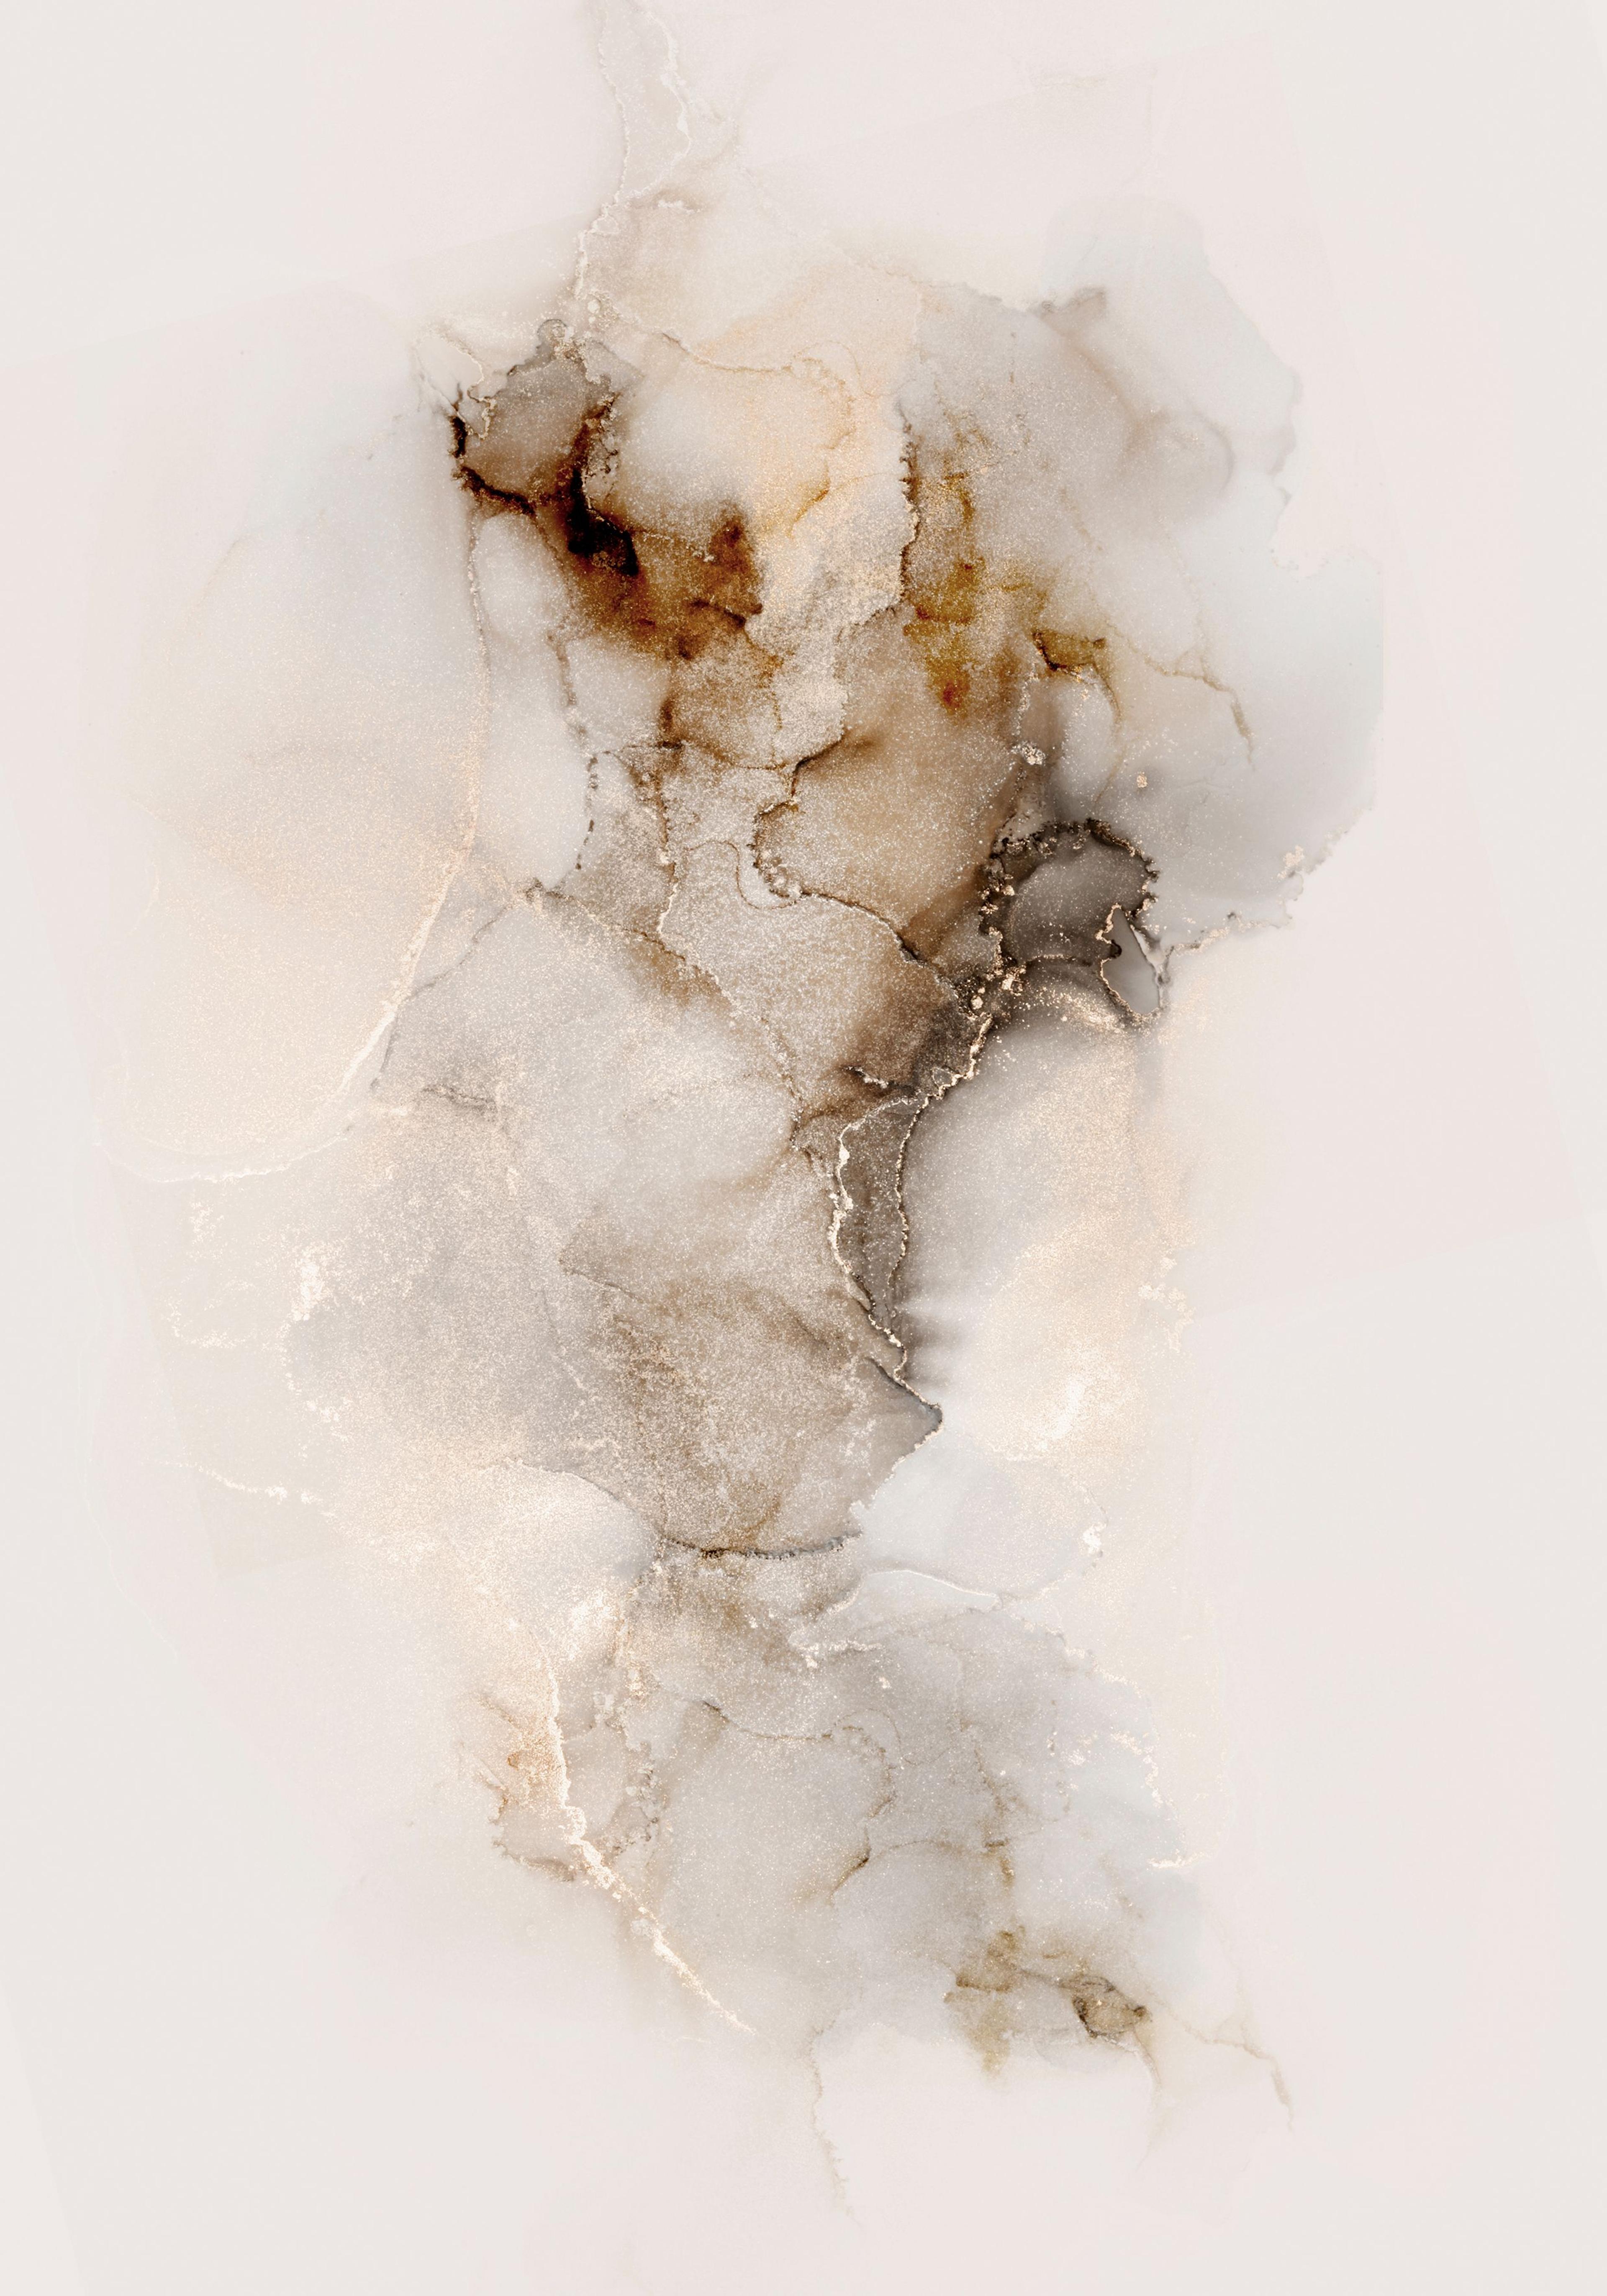 Plakat Mglista przestrzeń - plakat z abstrakcyjnym tłem w beżowych kolorach